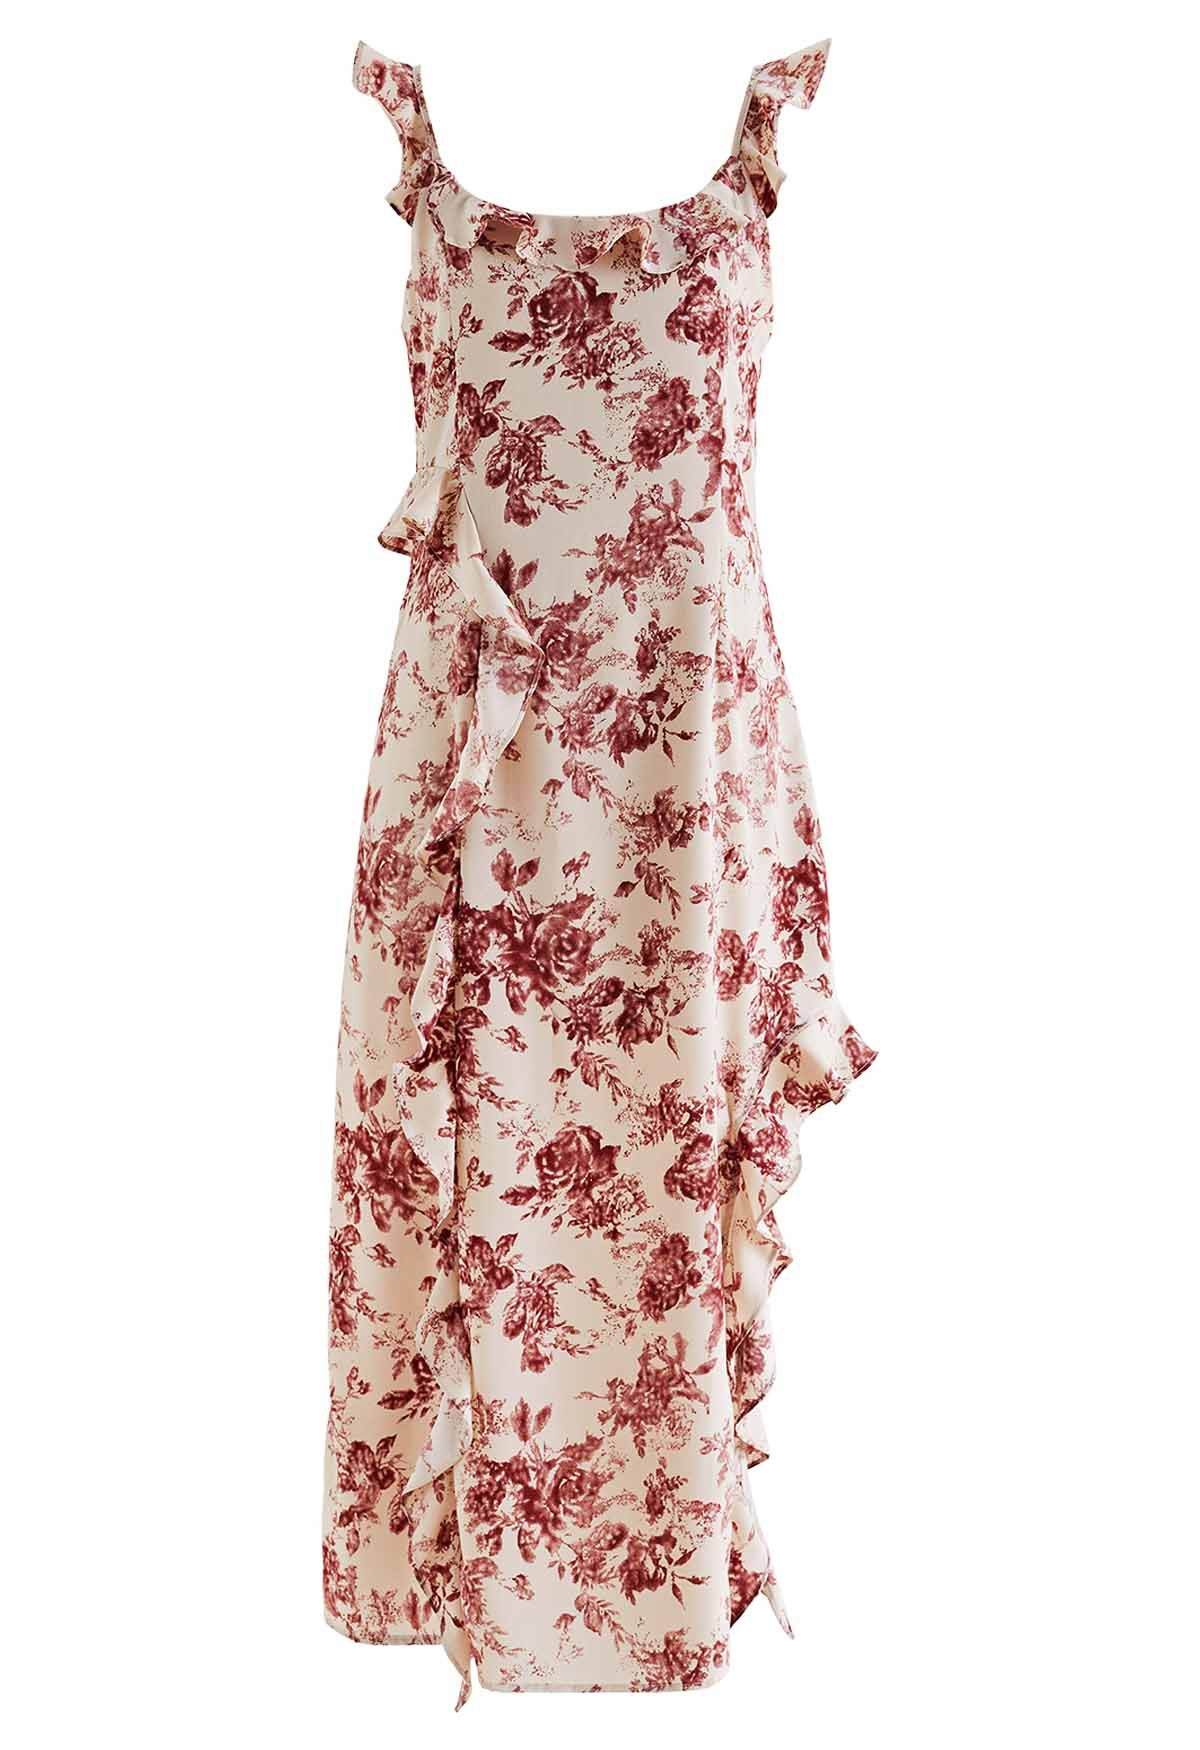 Rostfarbenes, gerüschtes, seitlich geschlitztes Cami-Kleid mit Blumenmuster